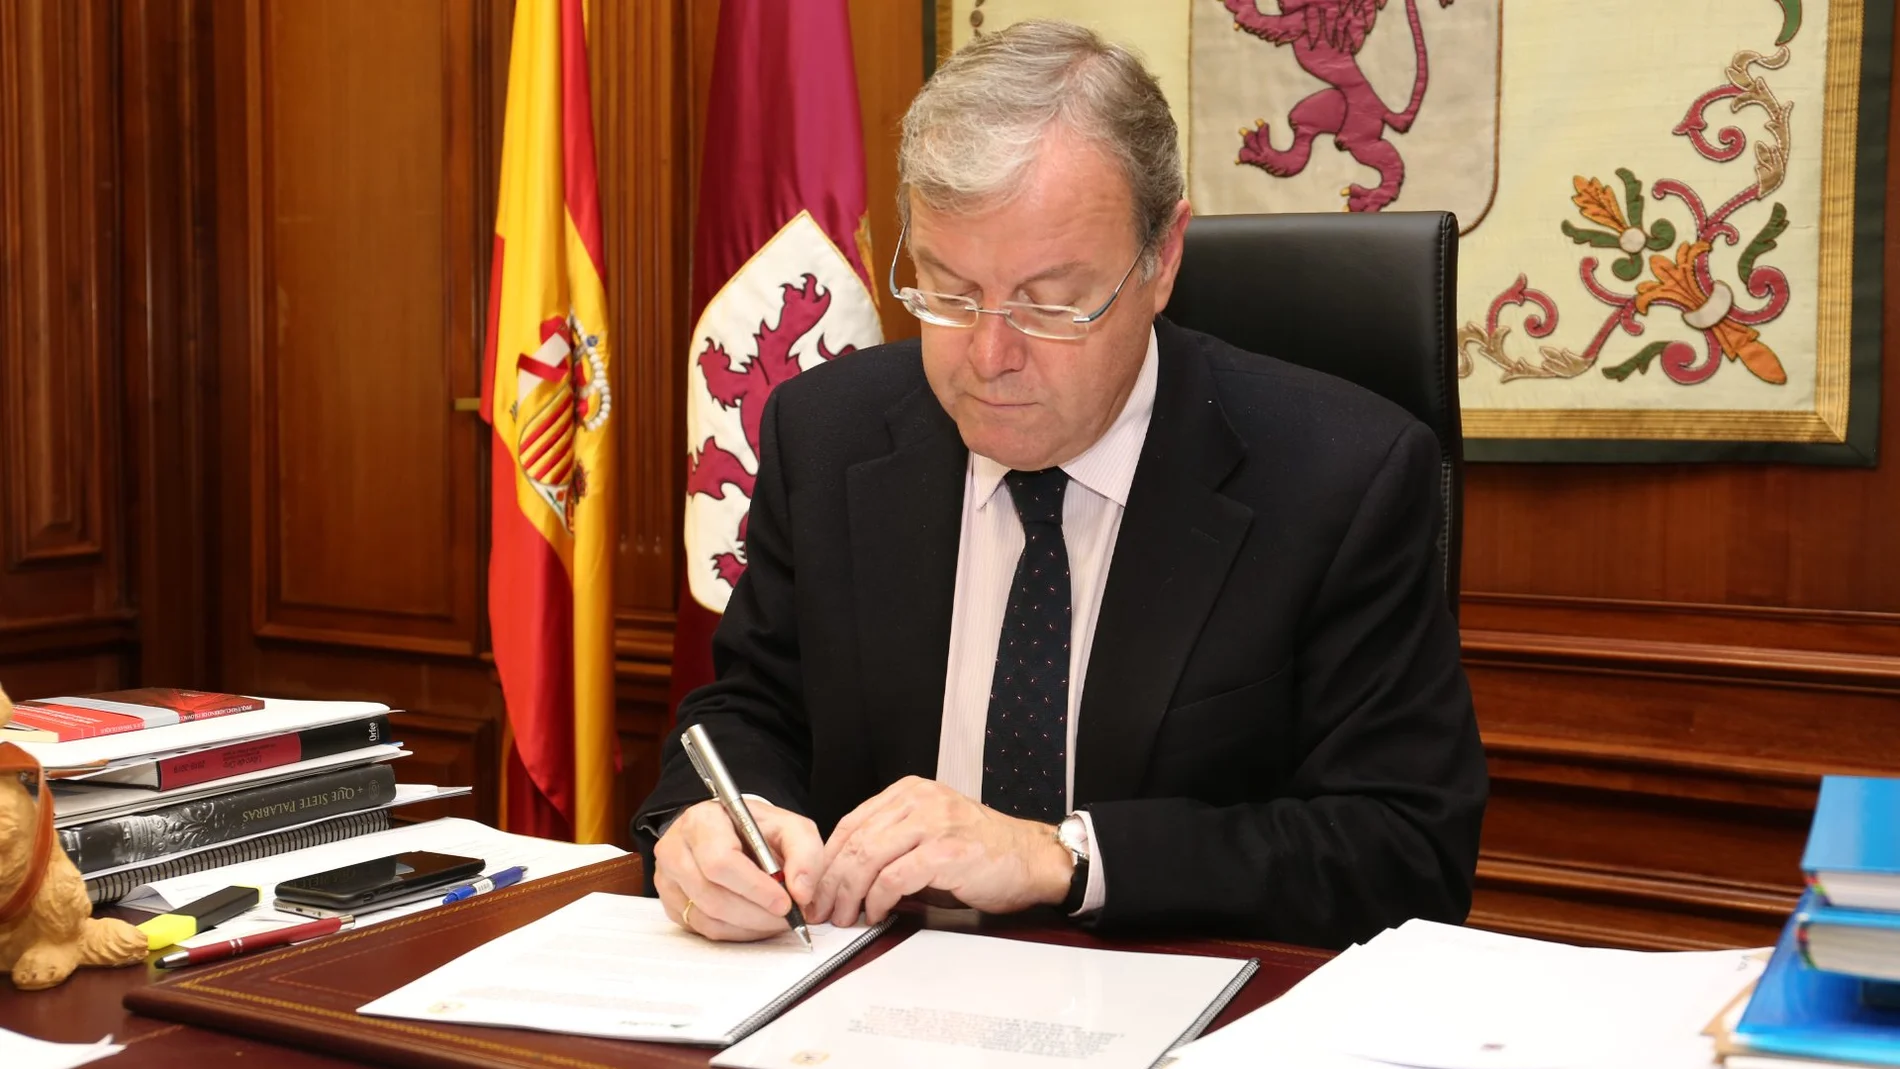 El alcalde de León, Antonio Silván, firma el acuerdo con Adif por el que se pide la integración ferroviaria